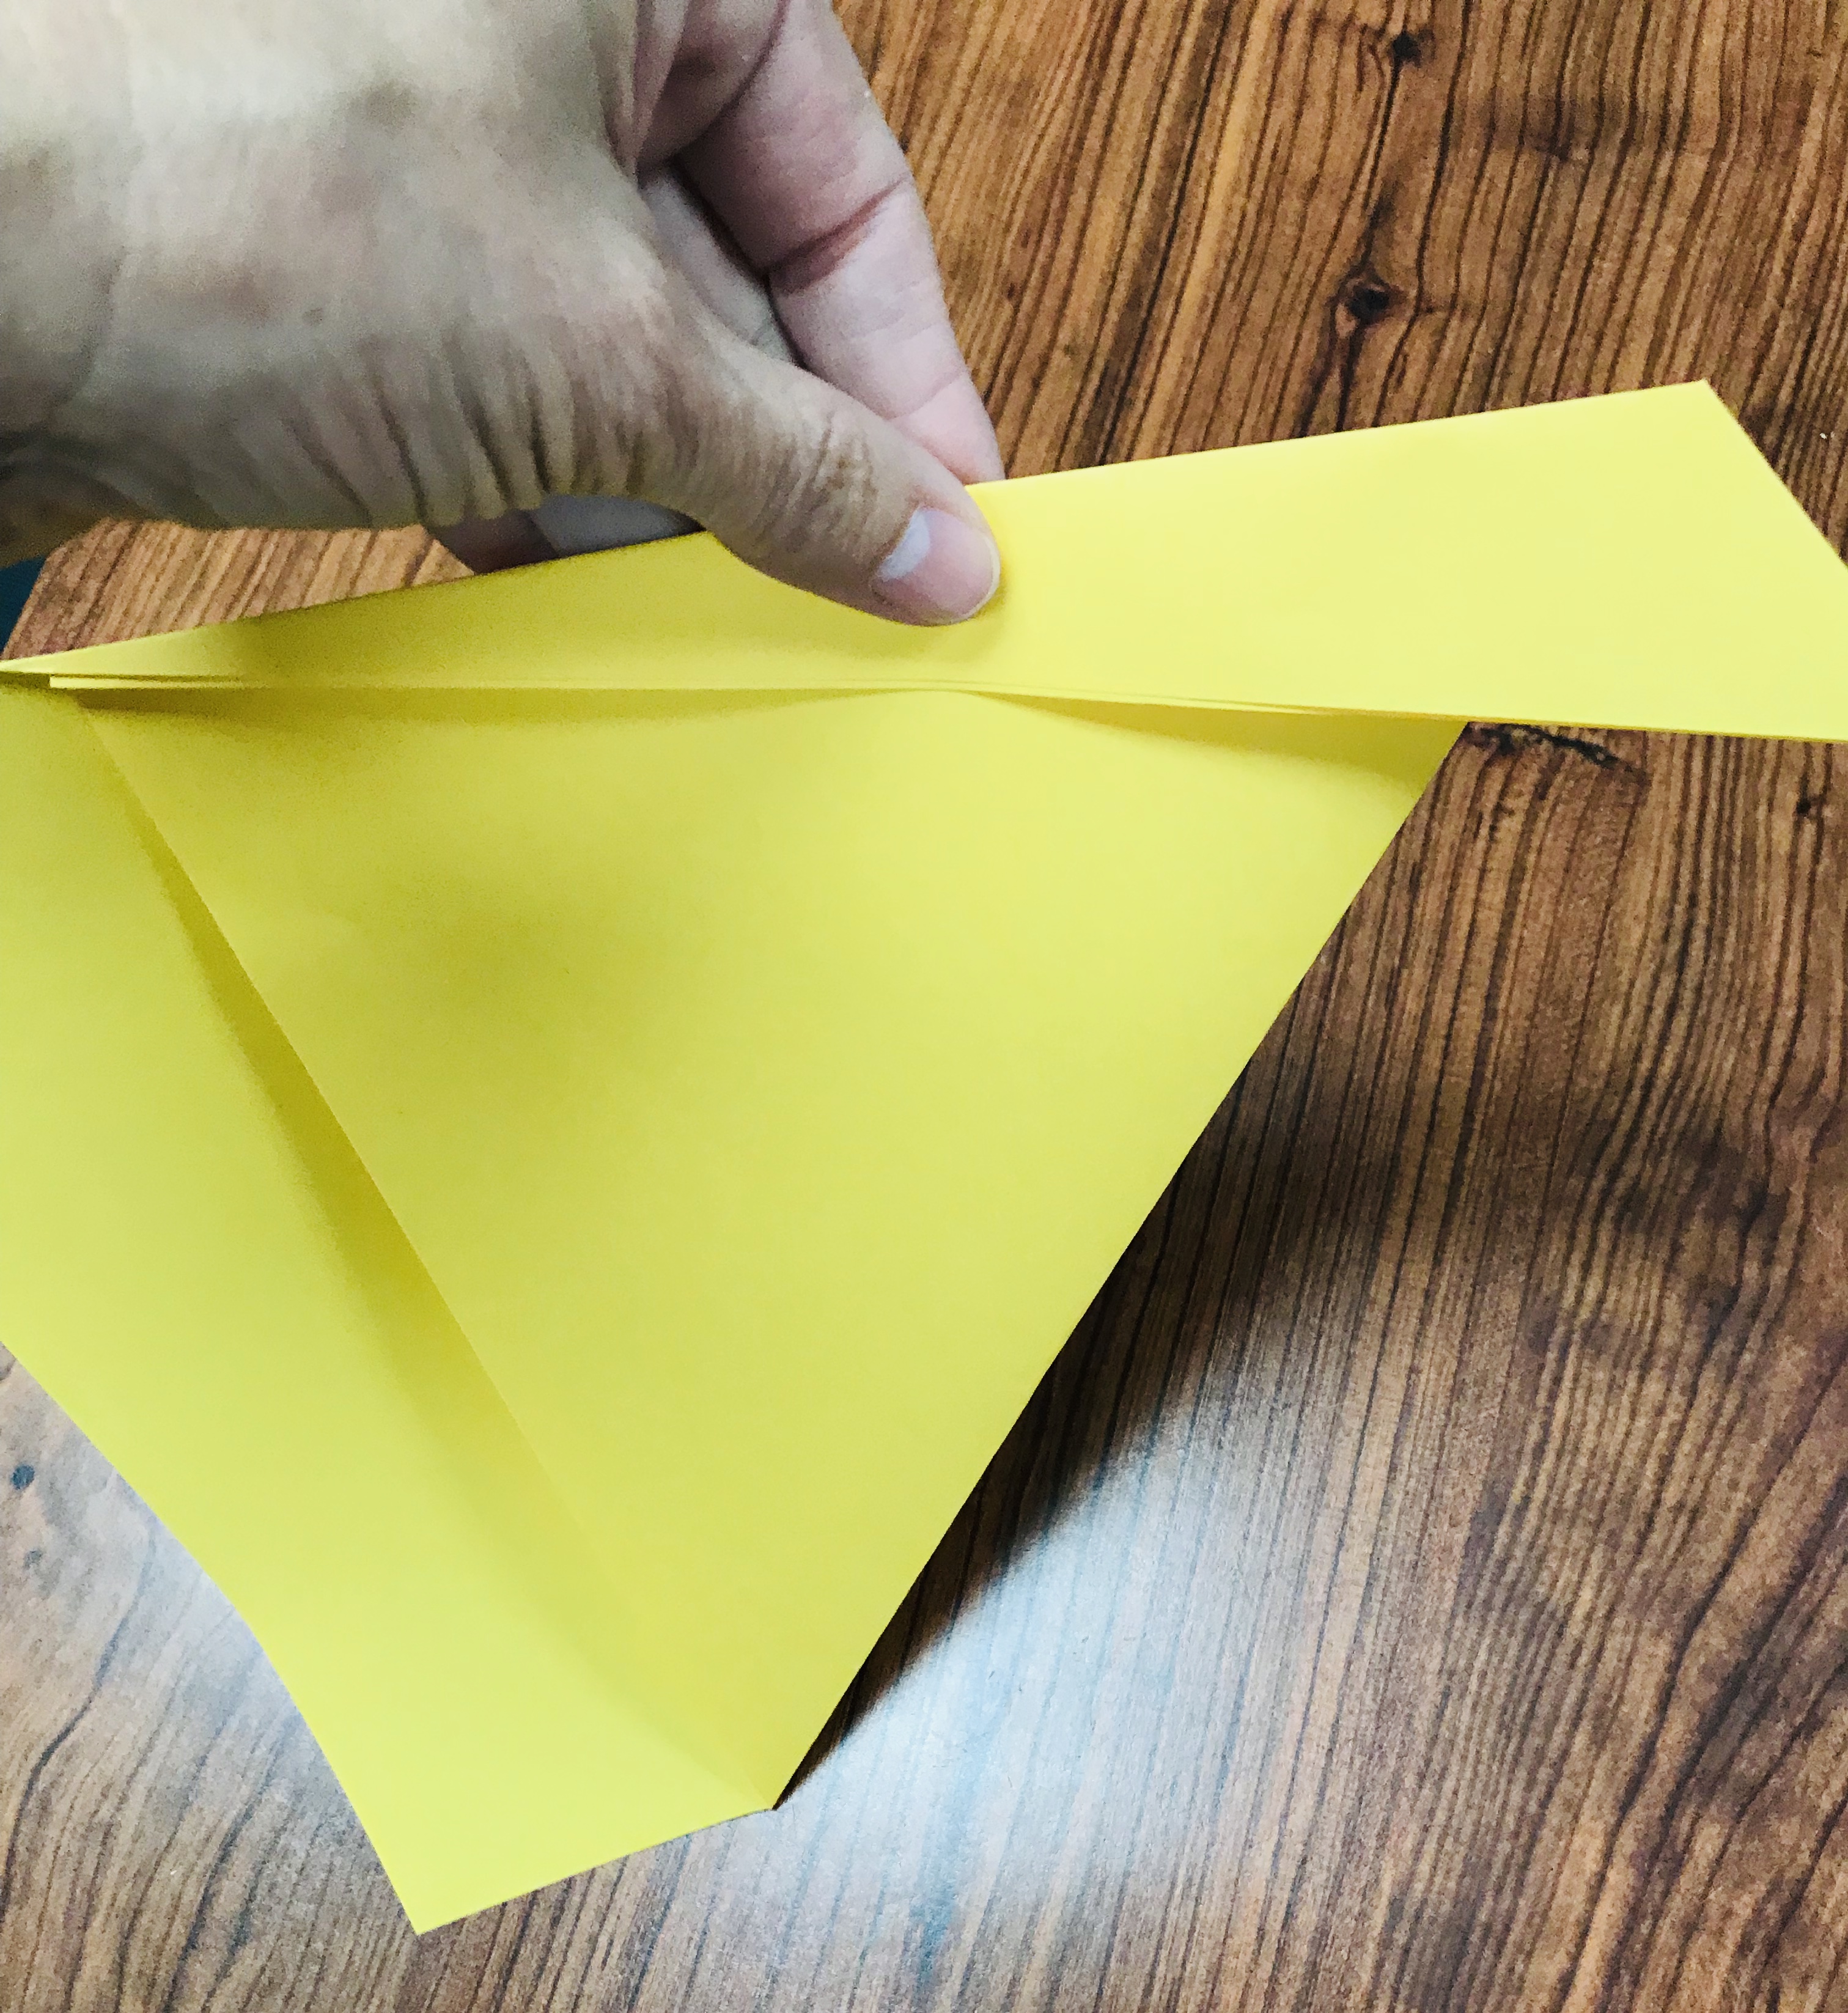 Folding yellow paper